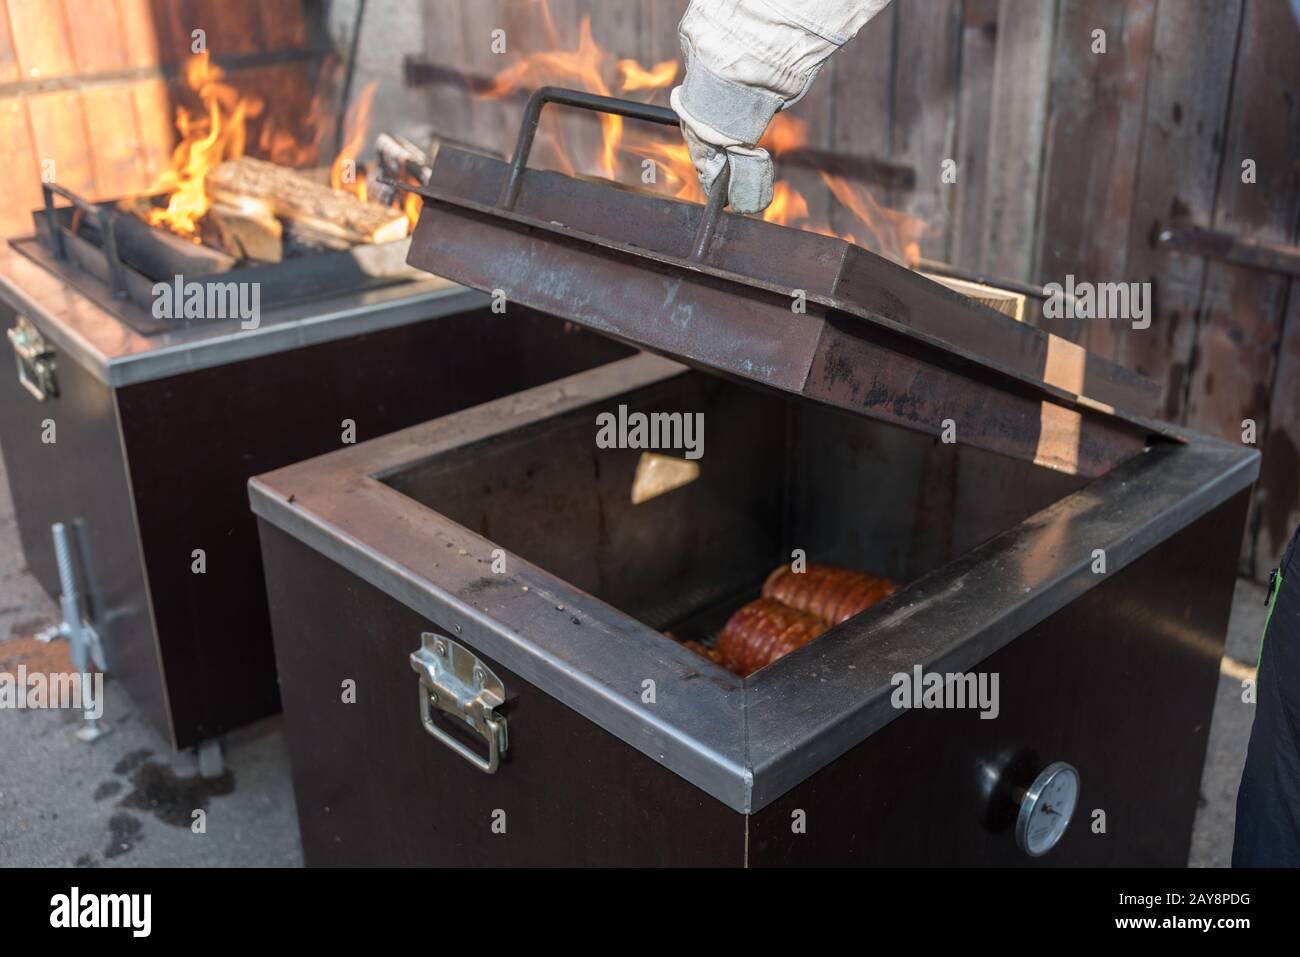 Barbecue dans une forme spéciale - viande grillée au filet dans une boîte grill Banque D'Images